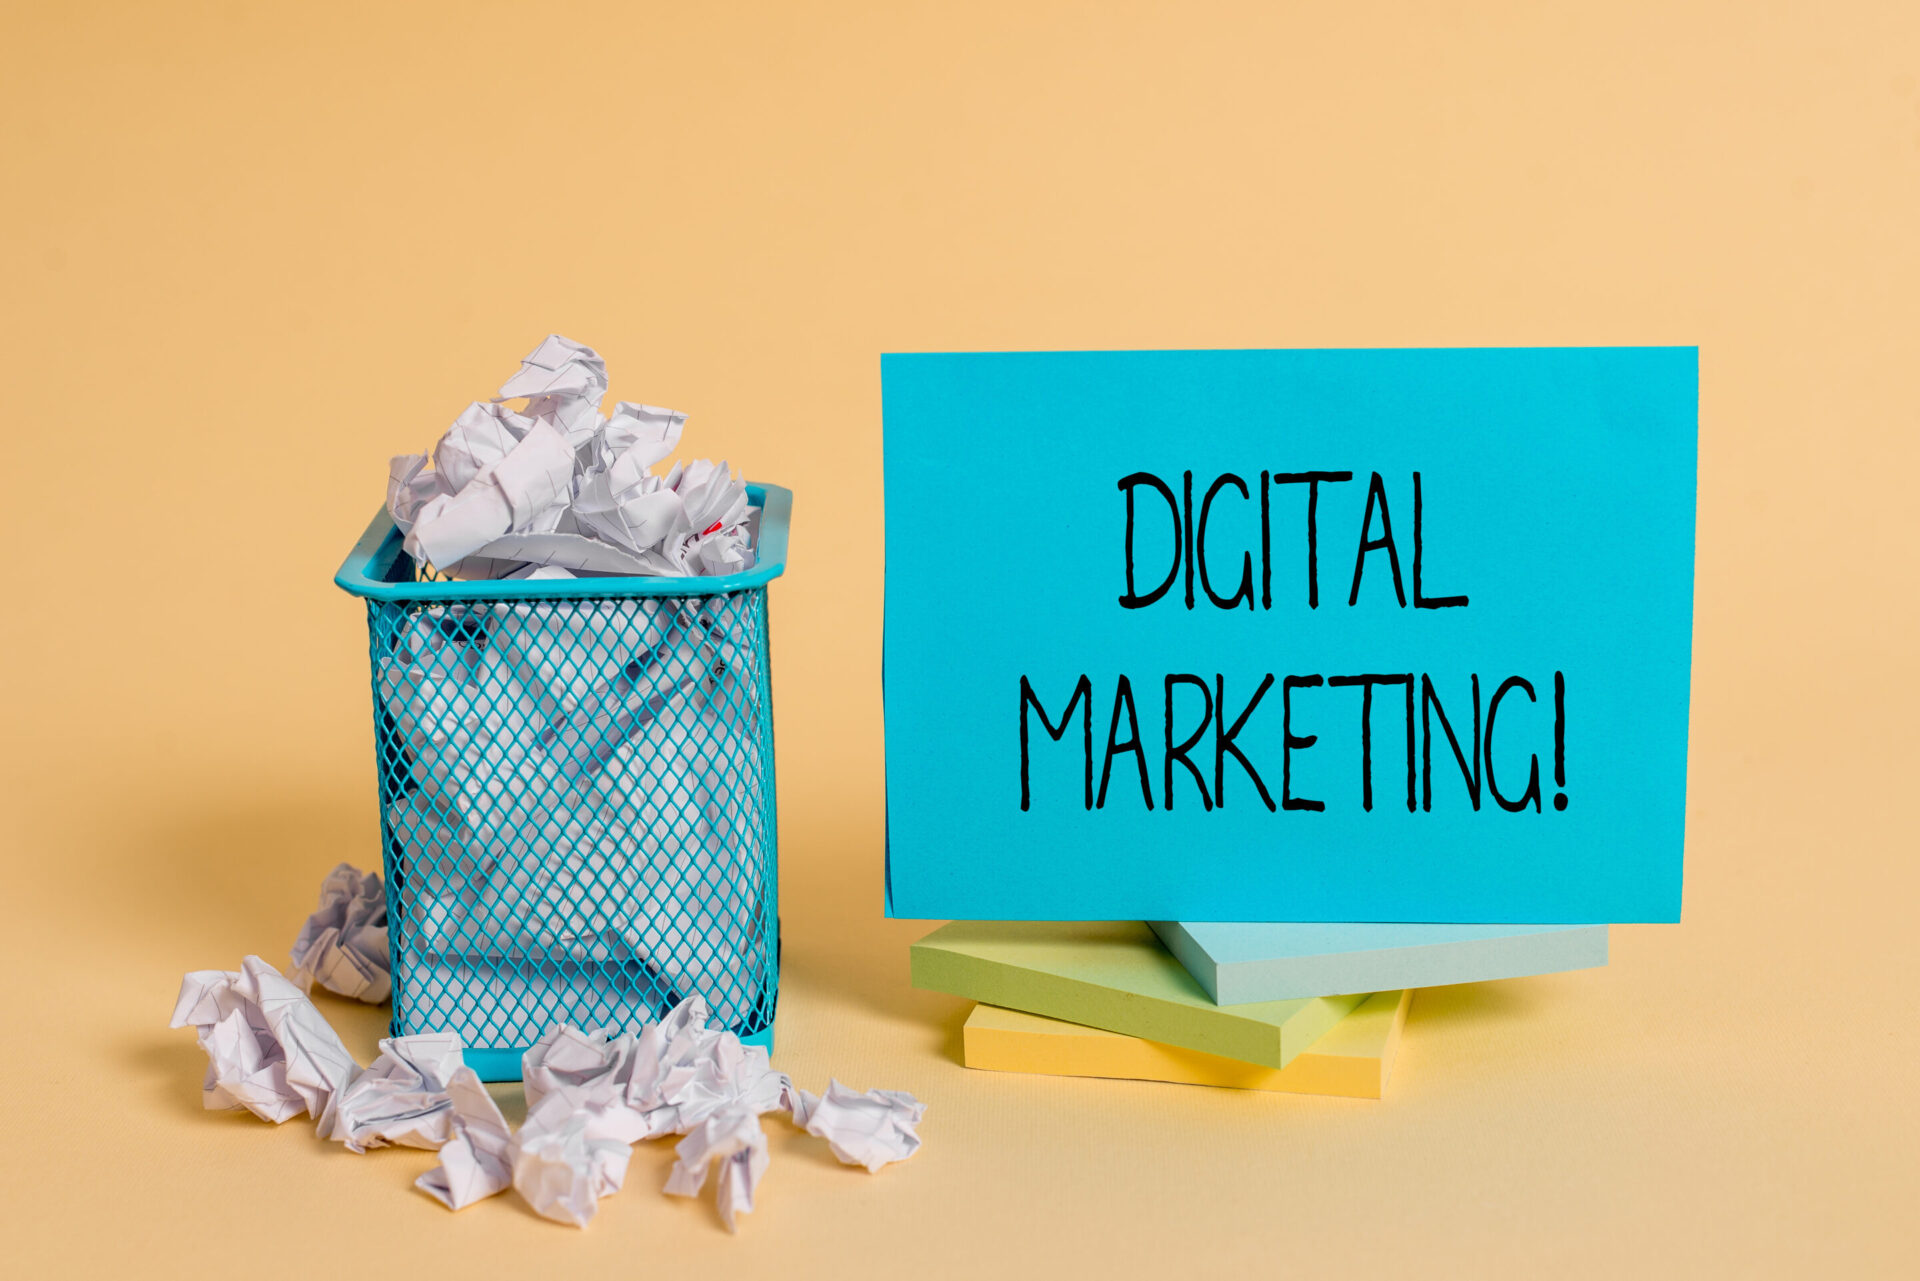 Digital Marketing ved siden af en papirkurv